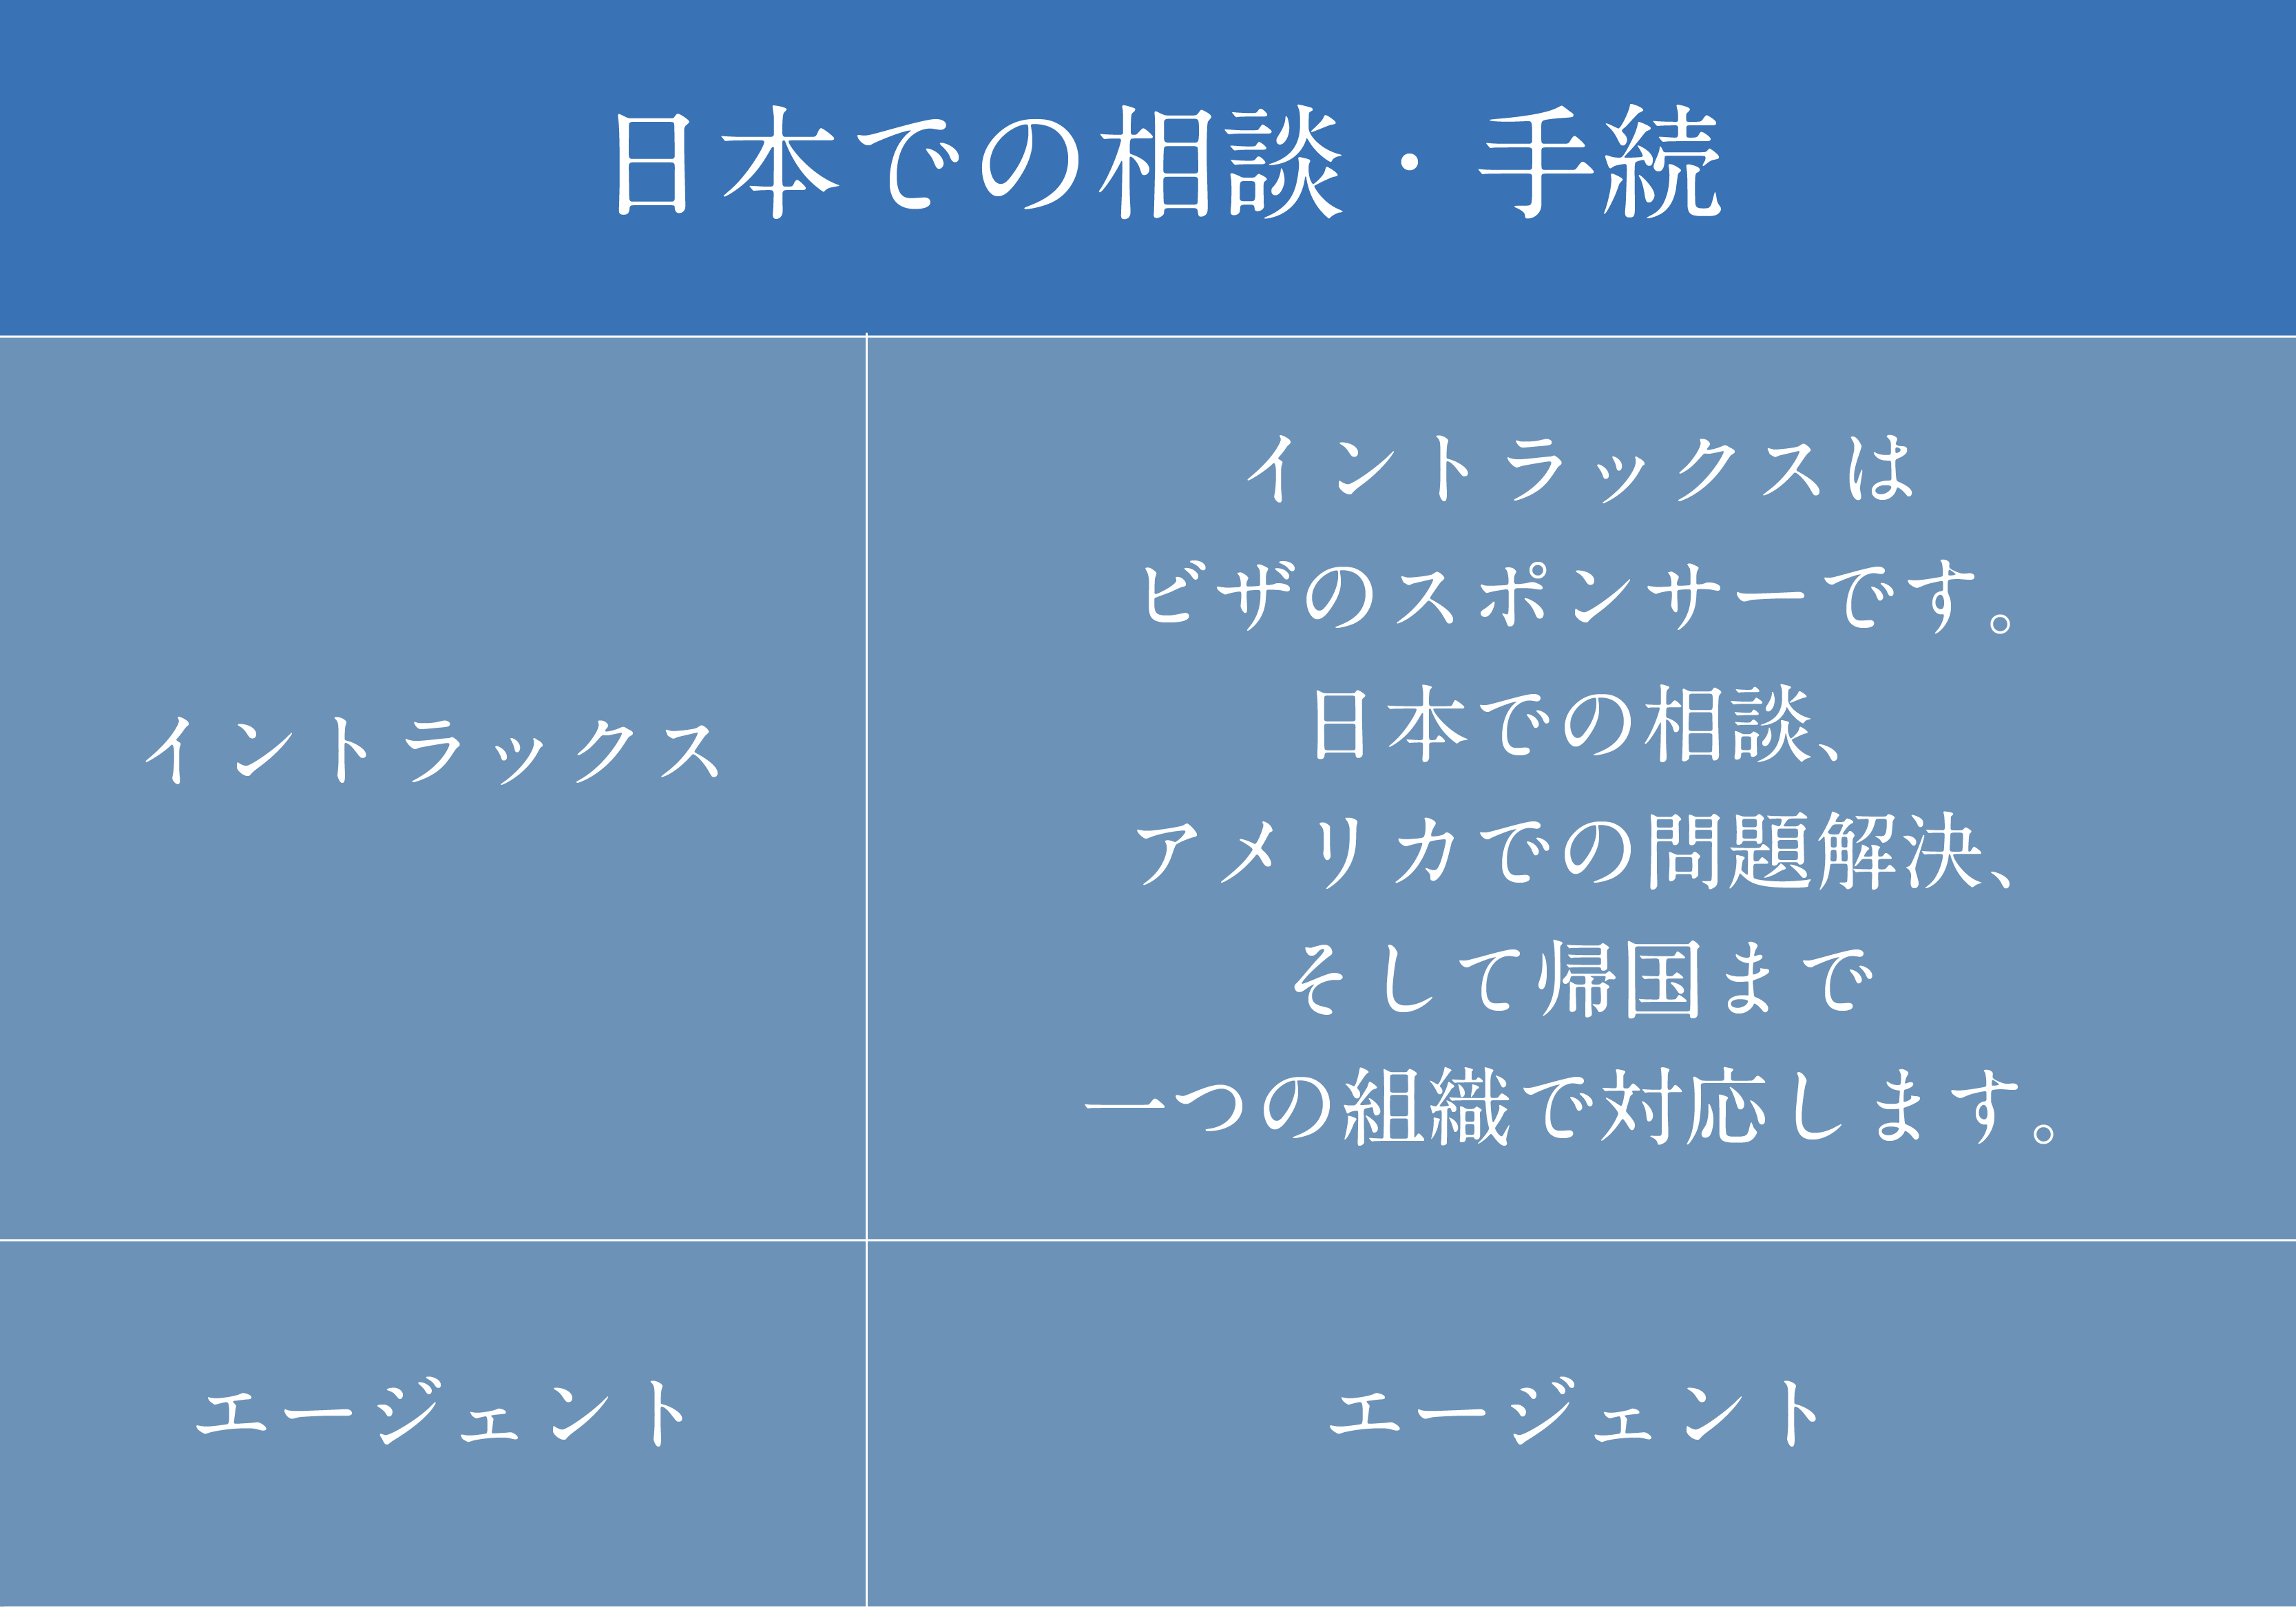 イントラックスと他社比較表　日本での相談や手続きの比較について説明しています。